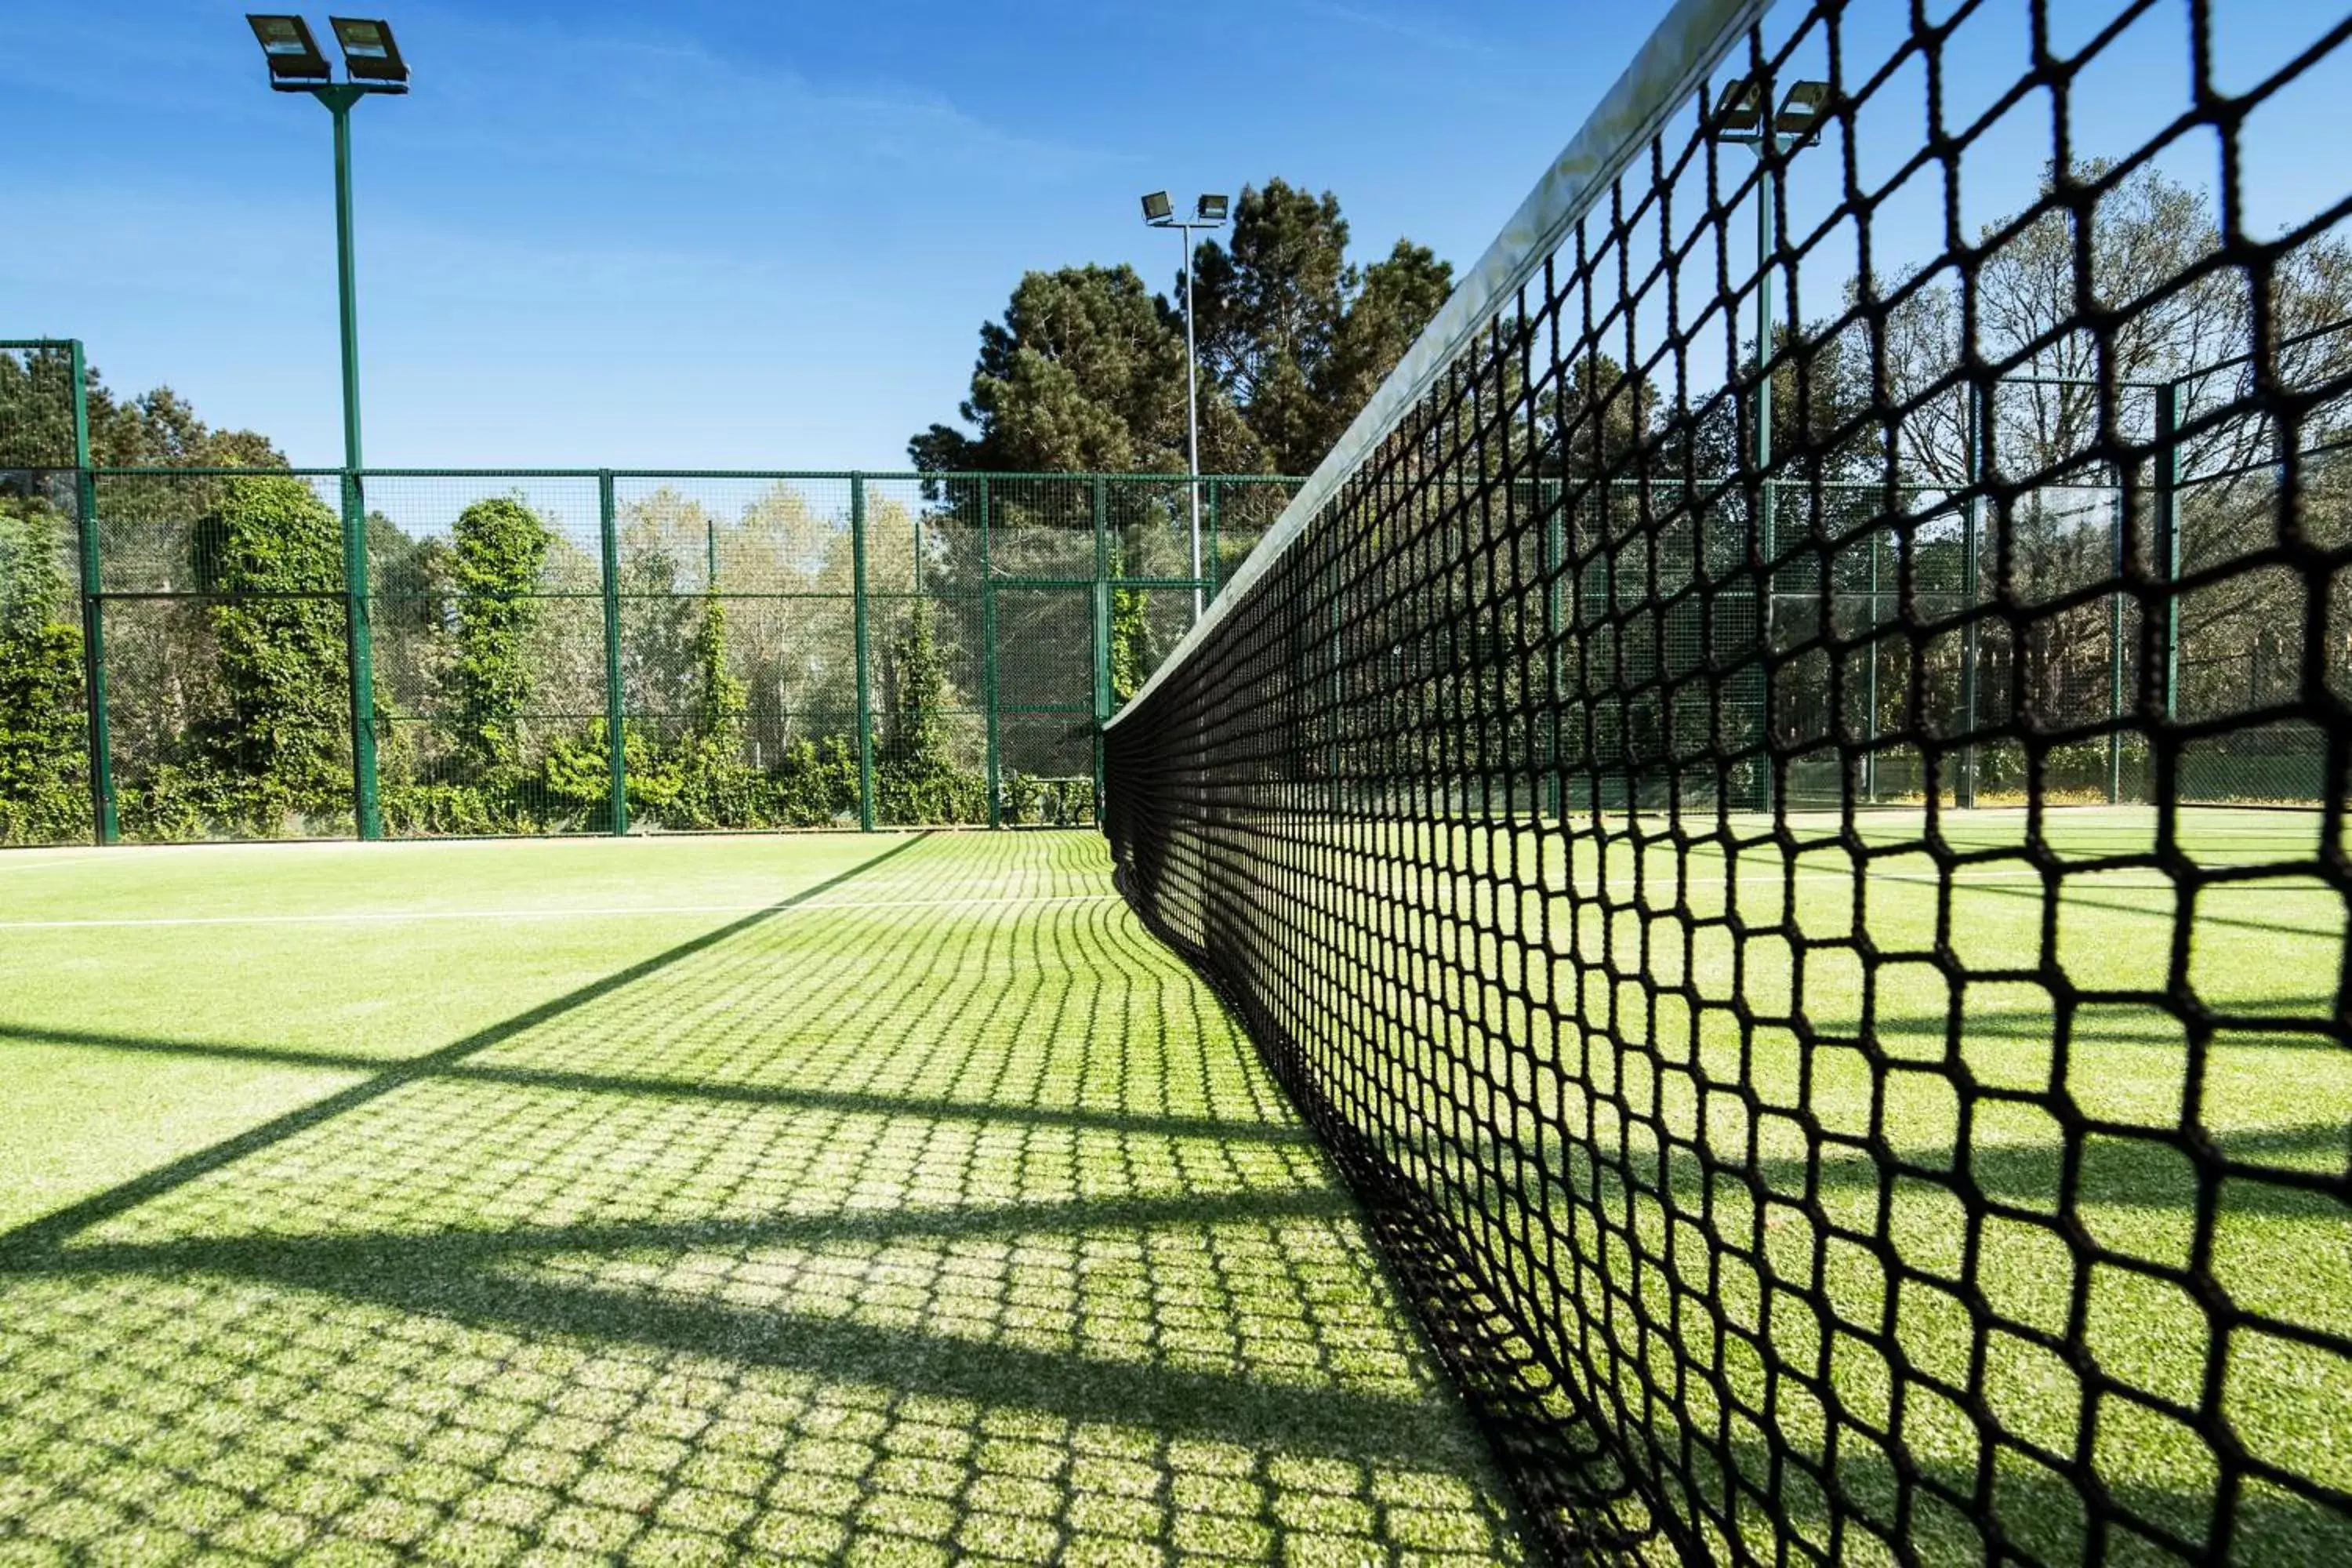 Tennis court, Other Activities in Mas Tapiolas